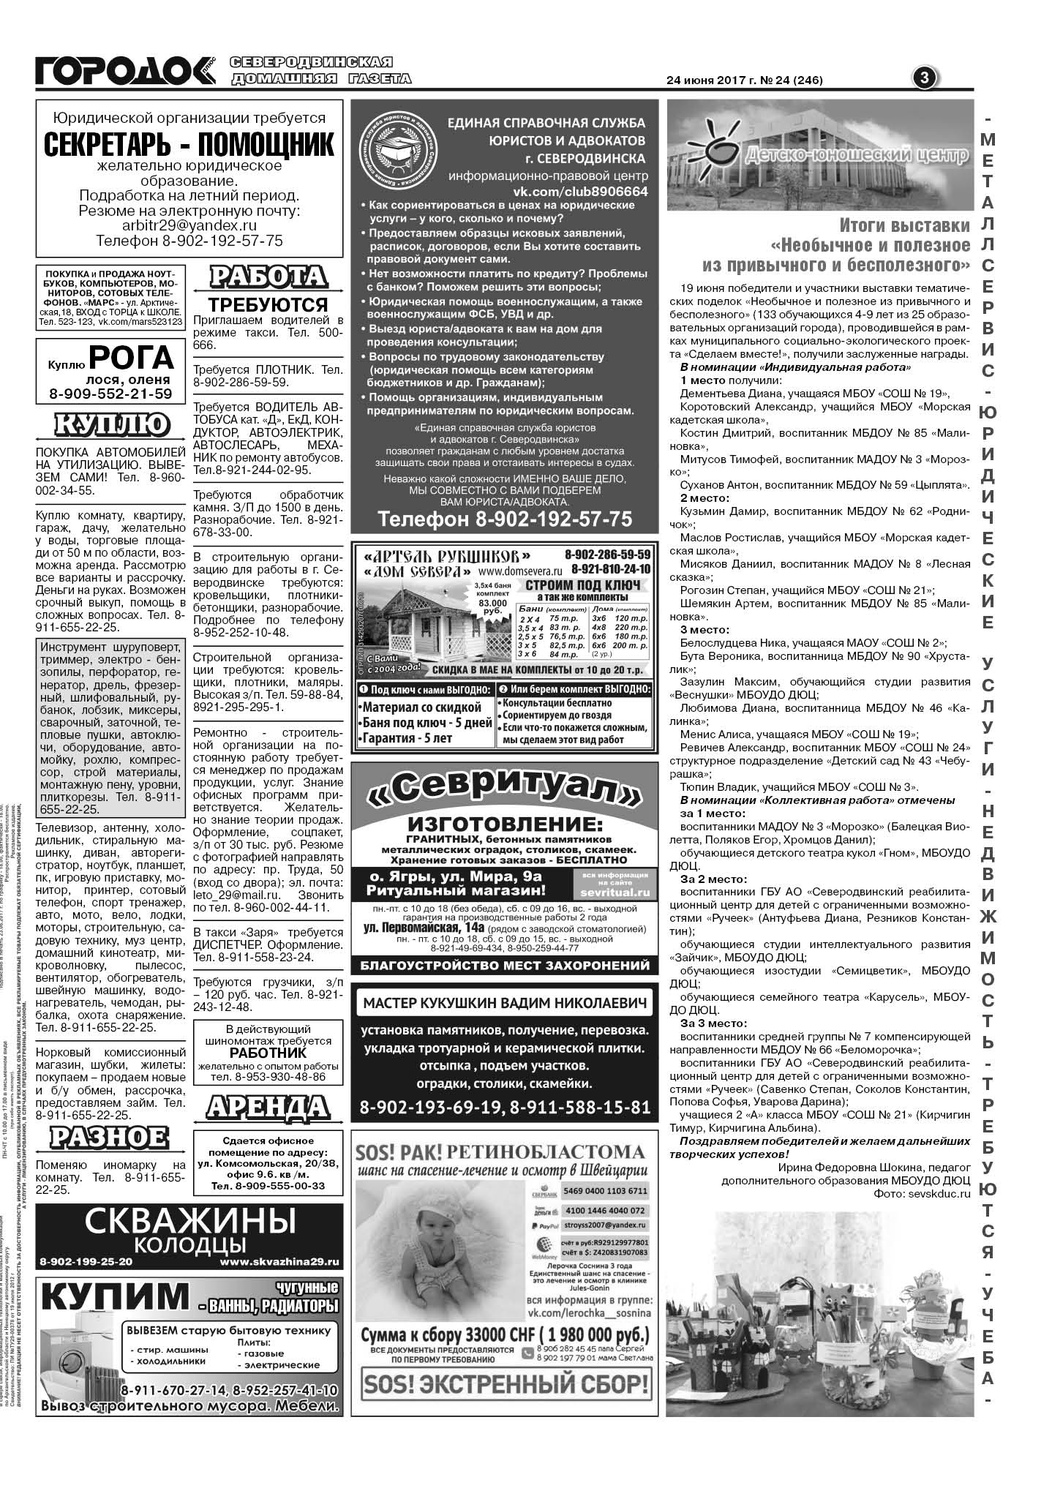 Городок плюс, выпуск номер 24 от 24 июня 2017 года, страница 3.